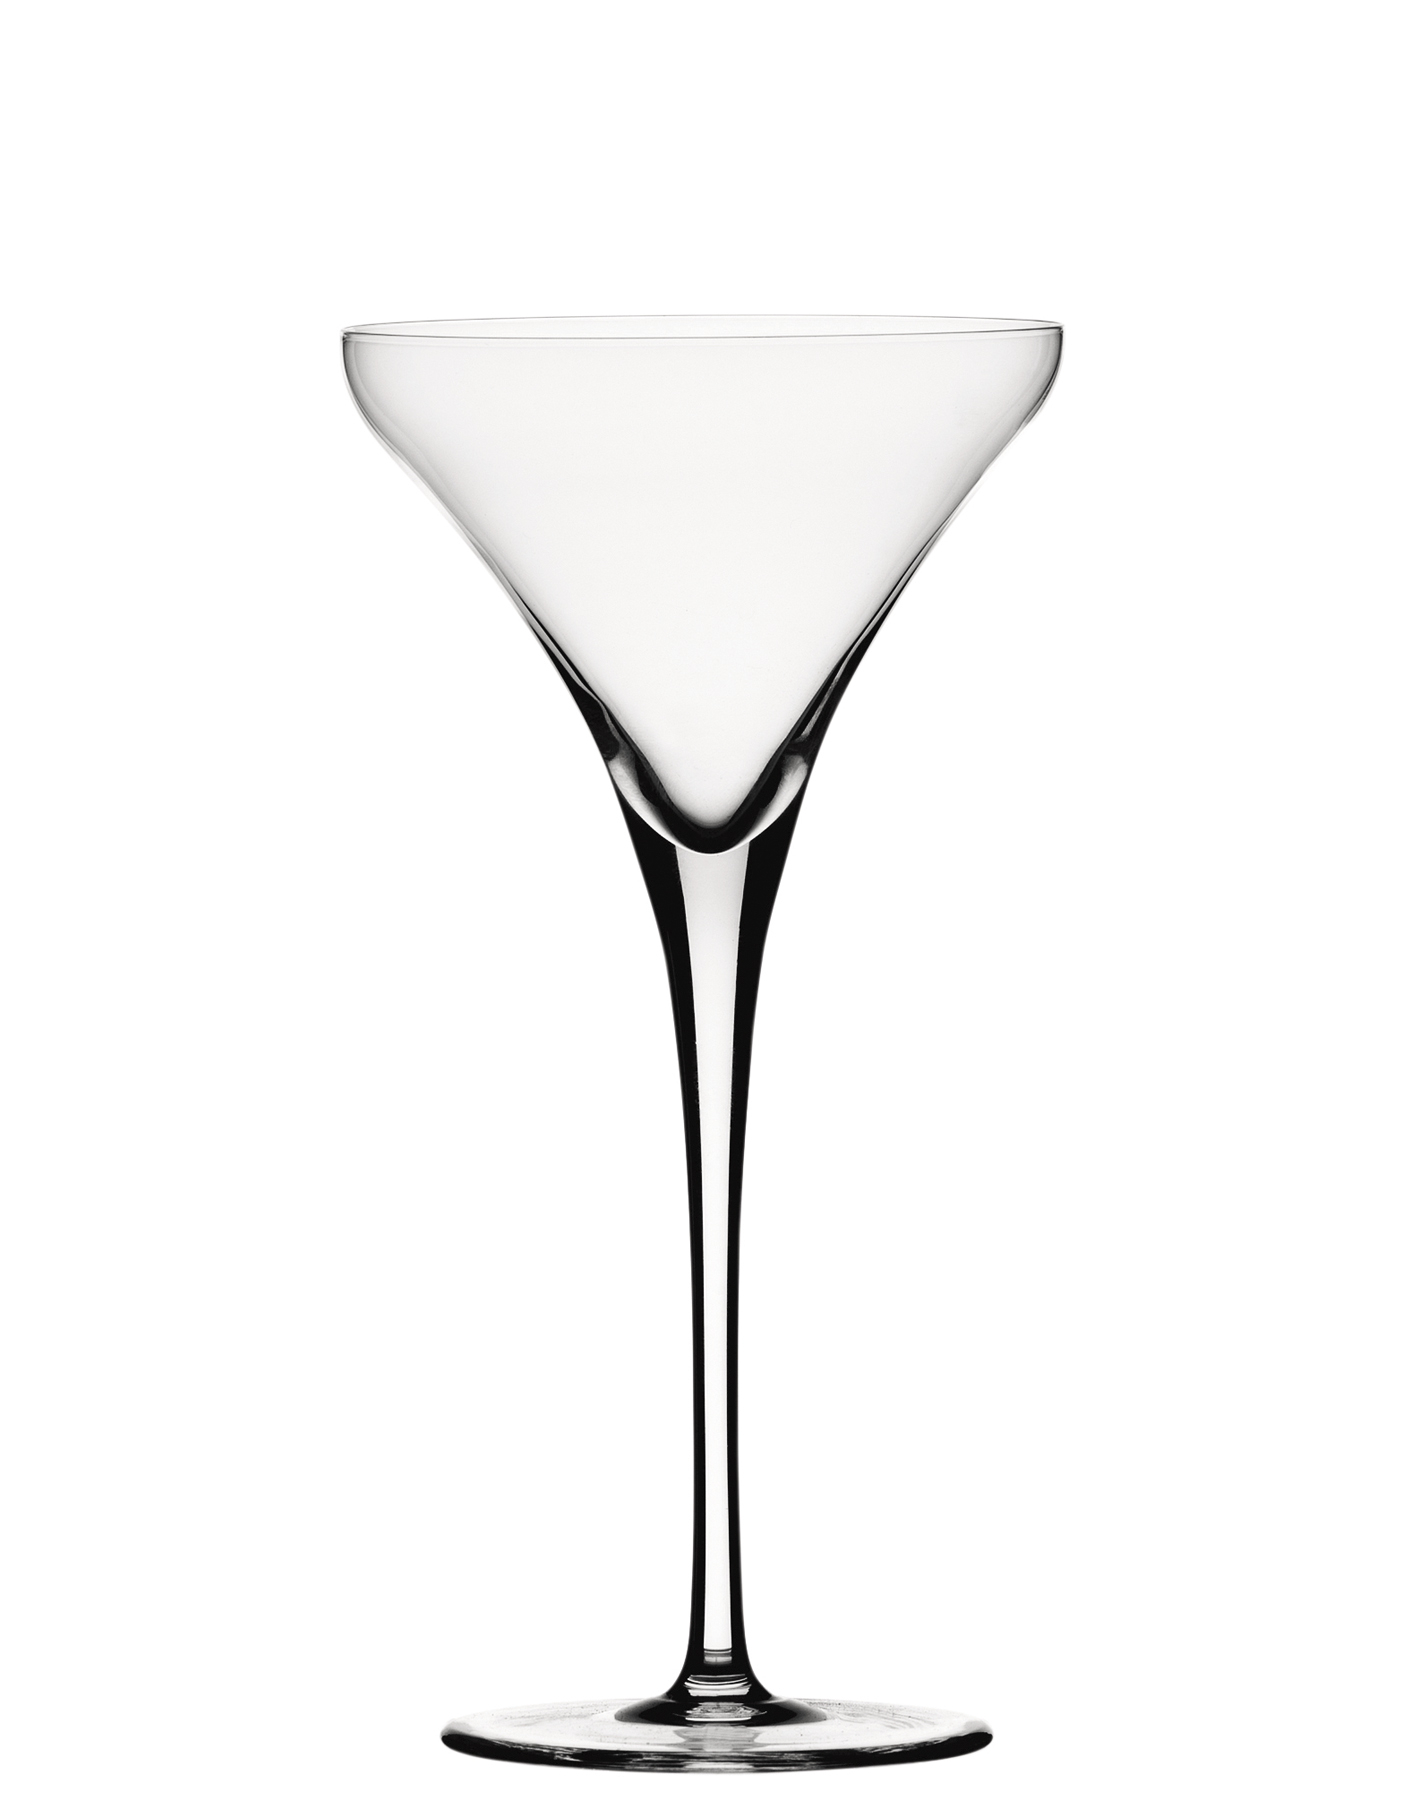 Martiniglas Willsberger Anniversary, Spiegelau - 260ml (1 Stk.)